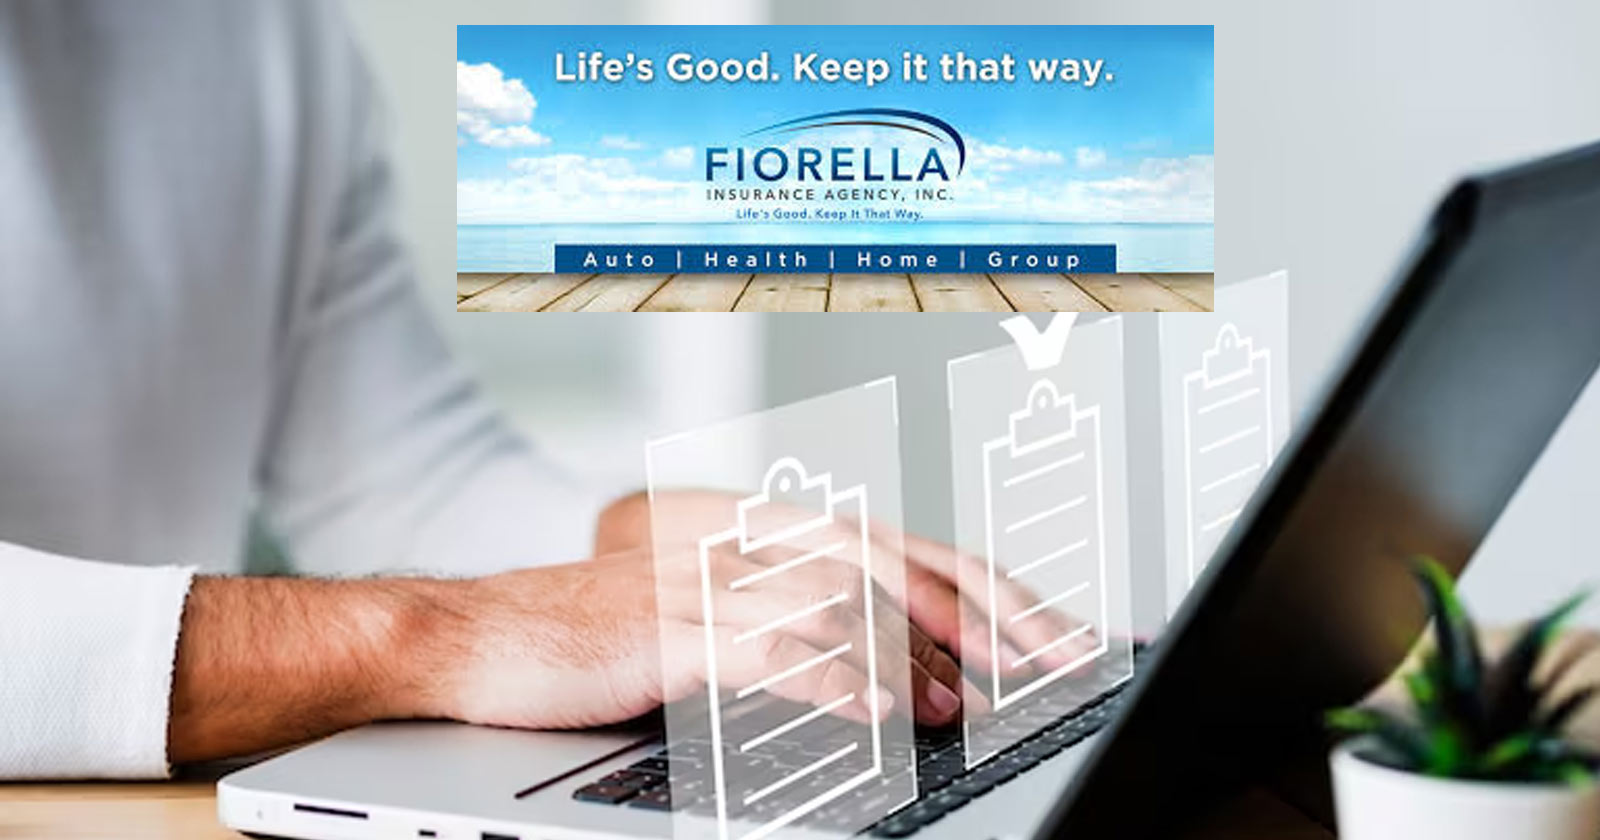 Fiorella Insurance